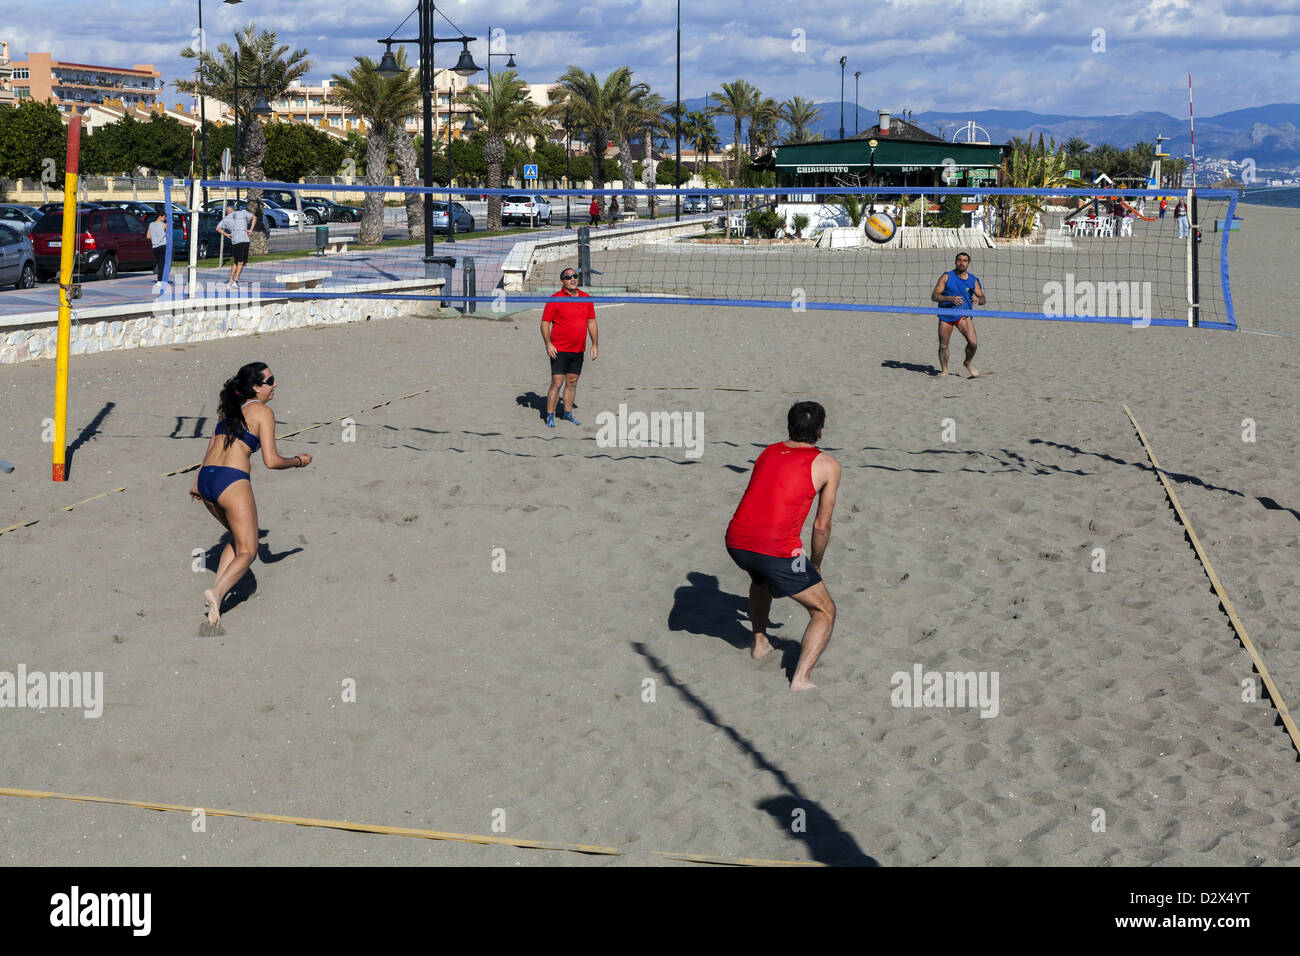 Jeu de volley-ball de plage se joue sur la plage à Torremolinos, Espagne Banque D'Images